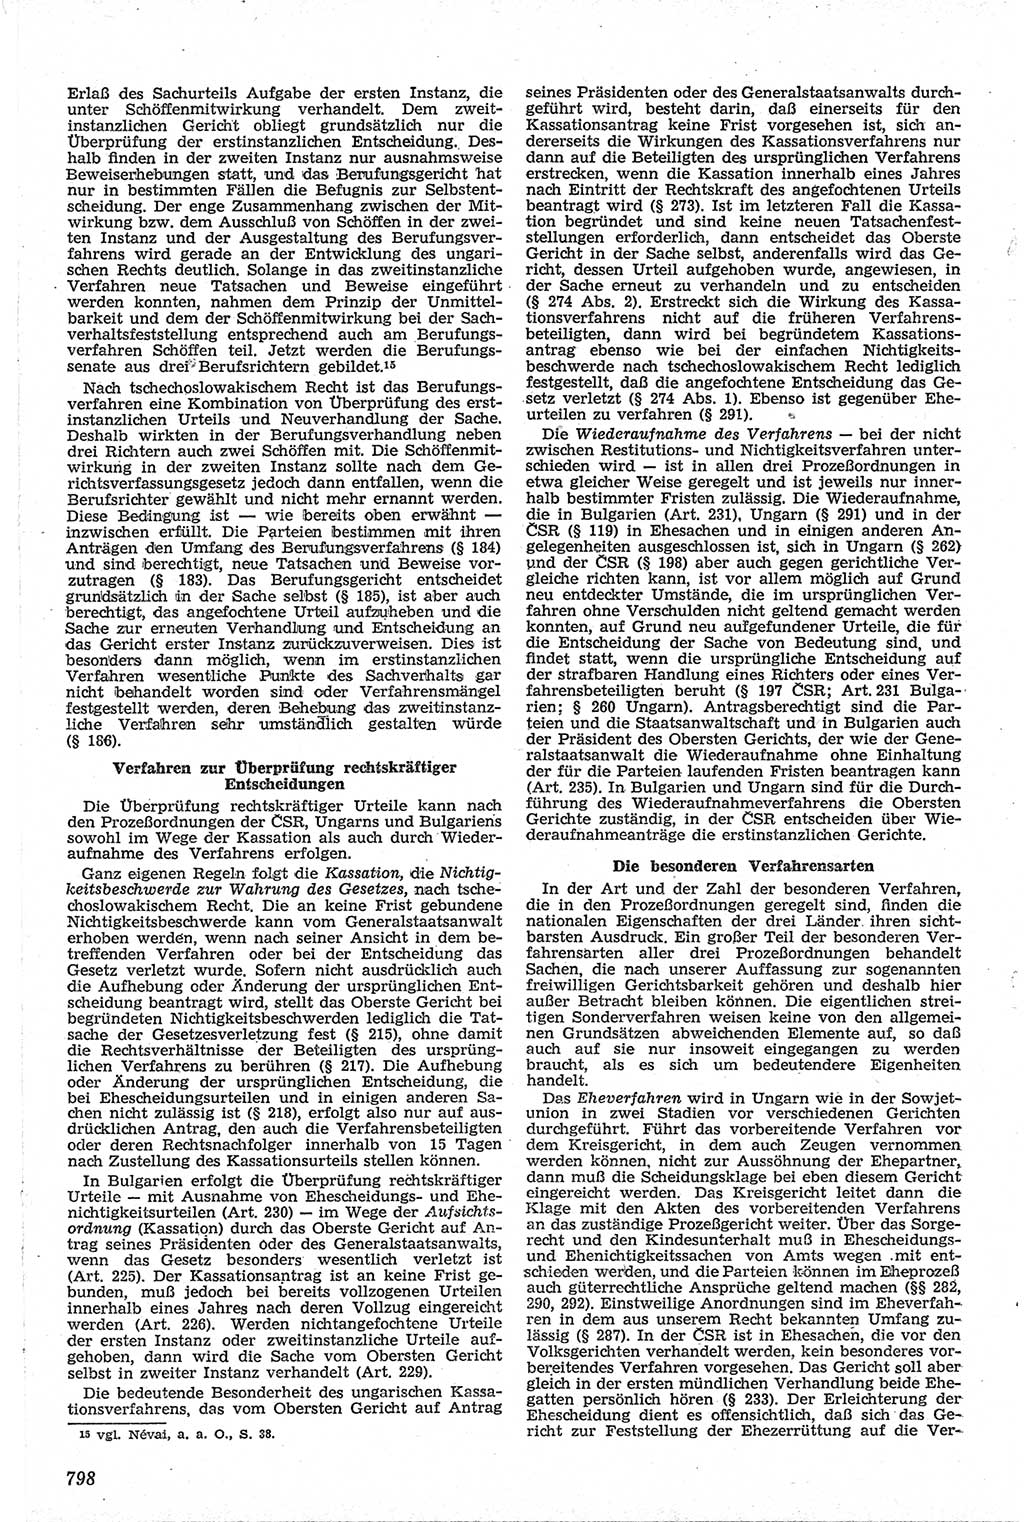 Neue Justiz (NJ), Zeitschrift für Recht und Rechtswissenschaft [Deutsche Demokratische Republik (DDR)], 13. Jahrgang 1959, Seite 798 (NJ DDR 1959, S. 798)